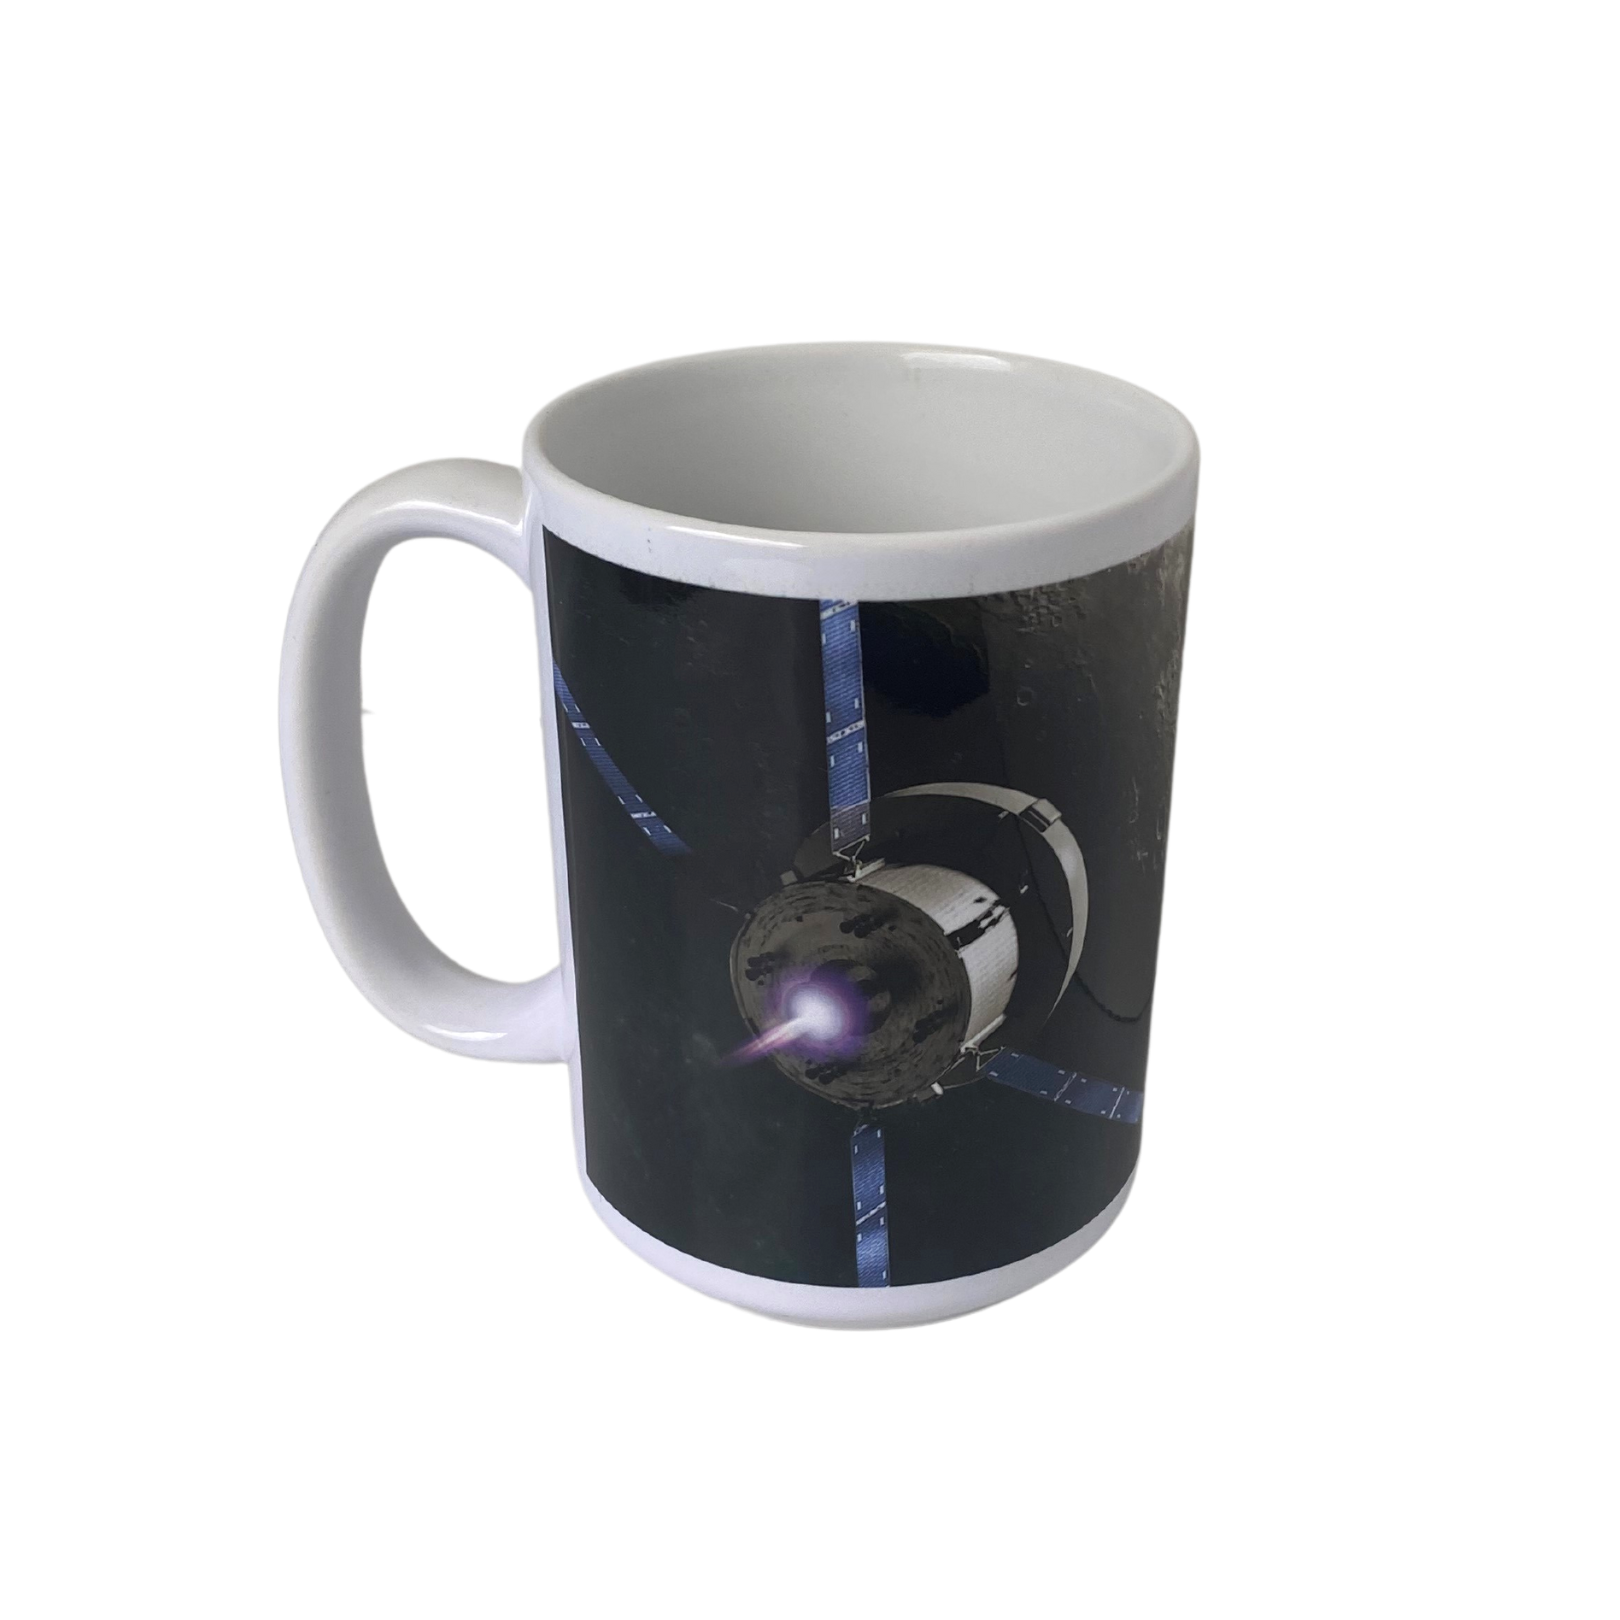 Artemis Program Ceramic Mug